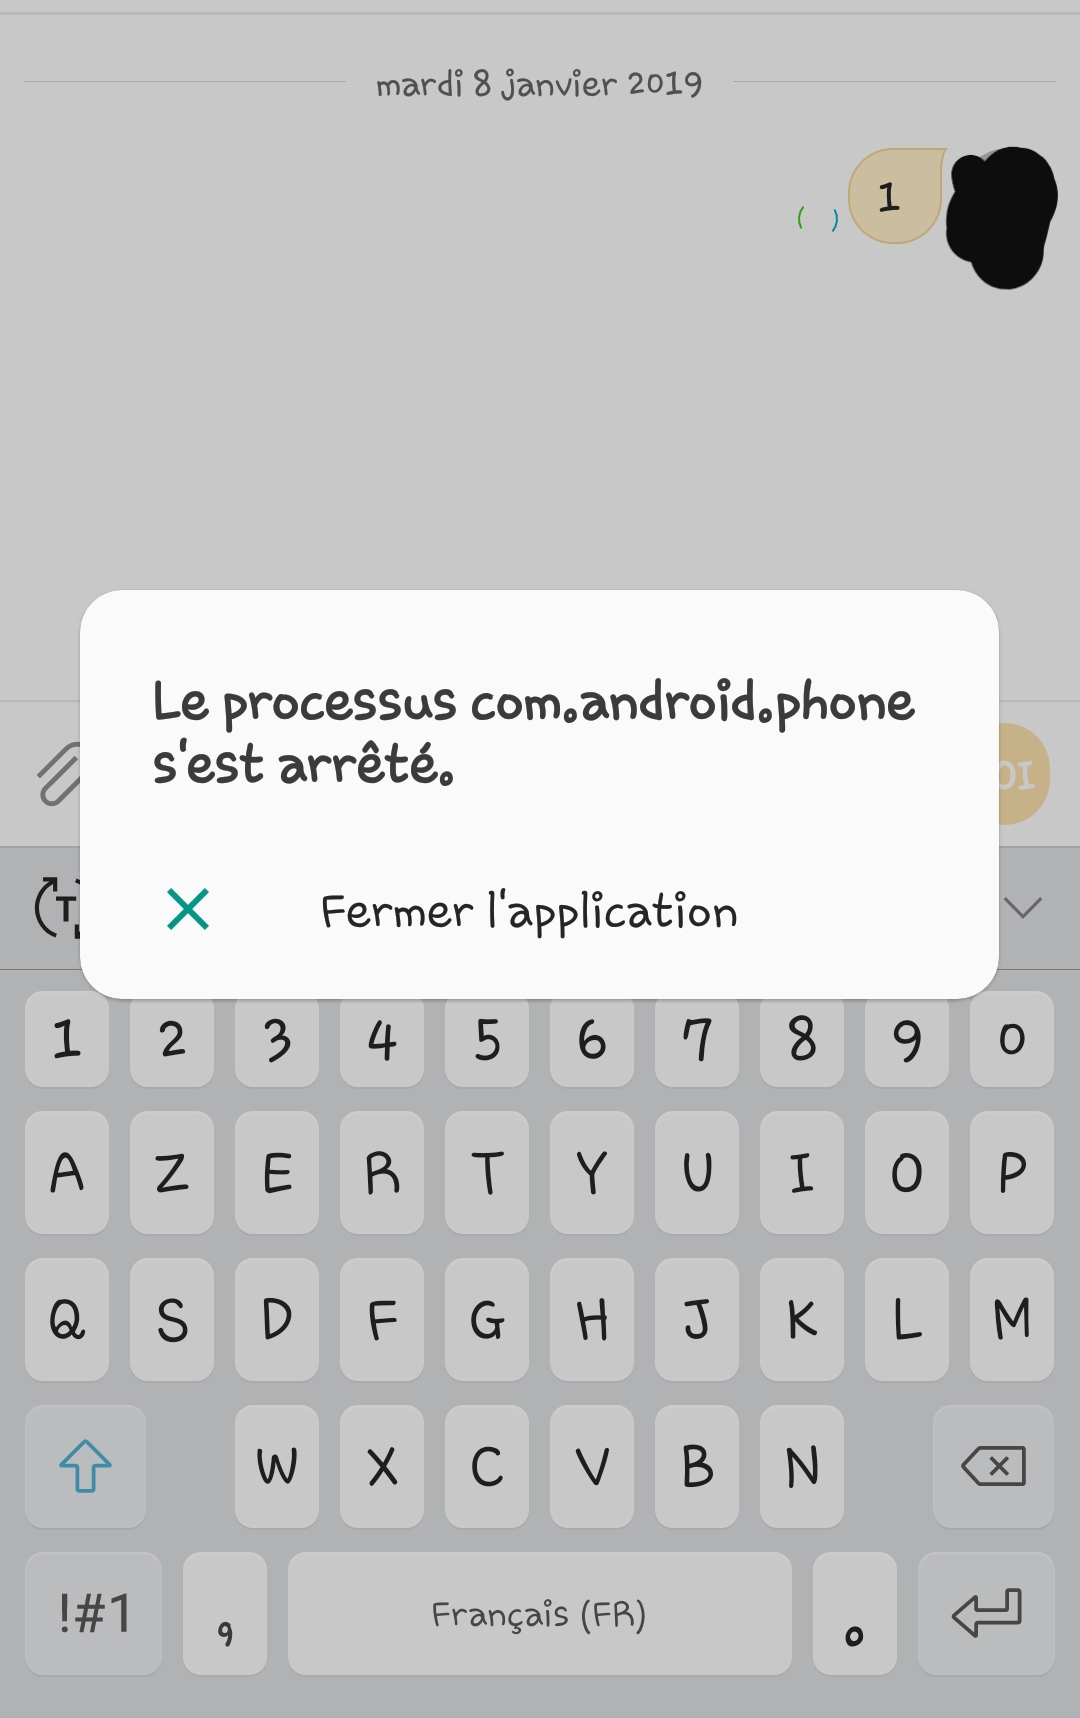 Débloquer envoi sms surtaxés - Samsung Community